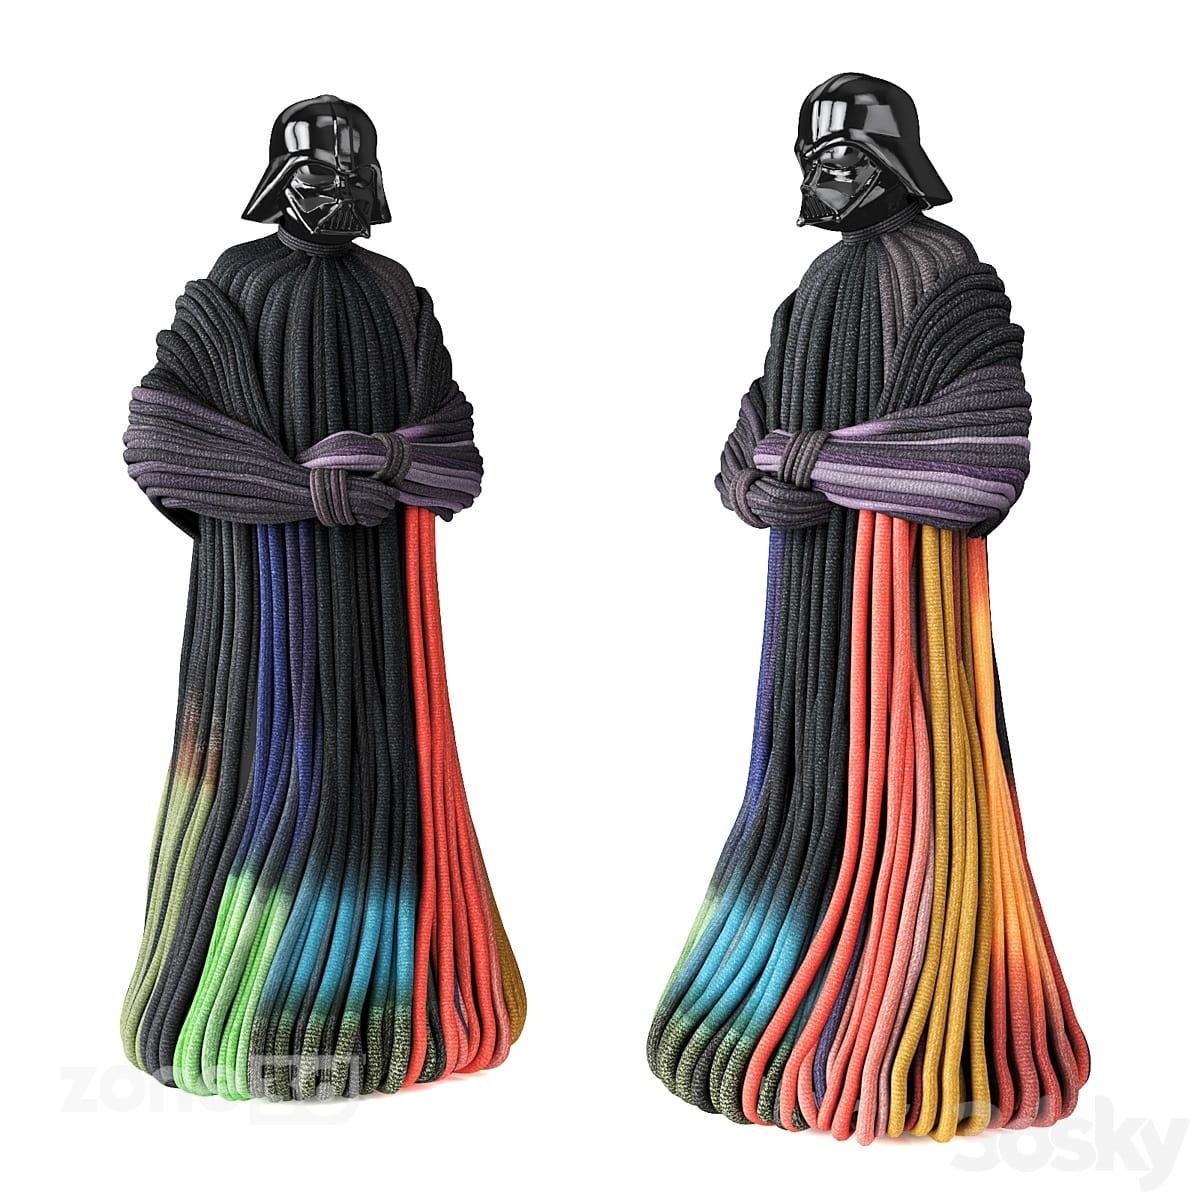 آبجکت مجسمه دکوری ایستاده پلاستیکی و پارچه ای مدرن مدل Darth Vader Knitted